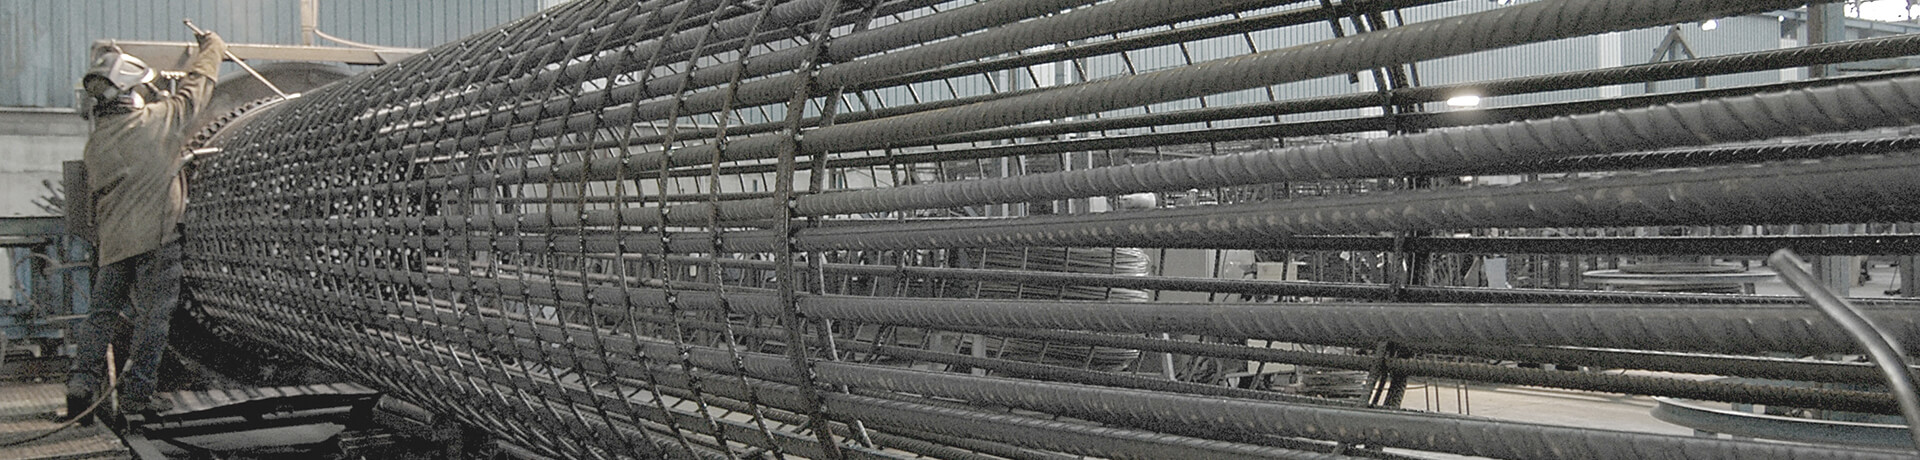 Rebar Fabrication building pile cages at Ingetek's plant